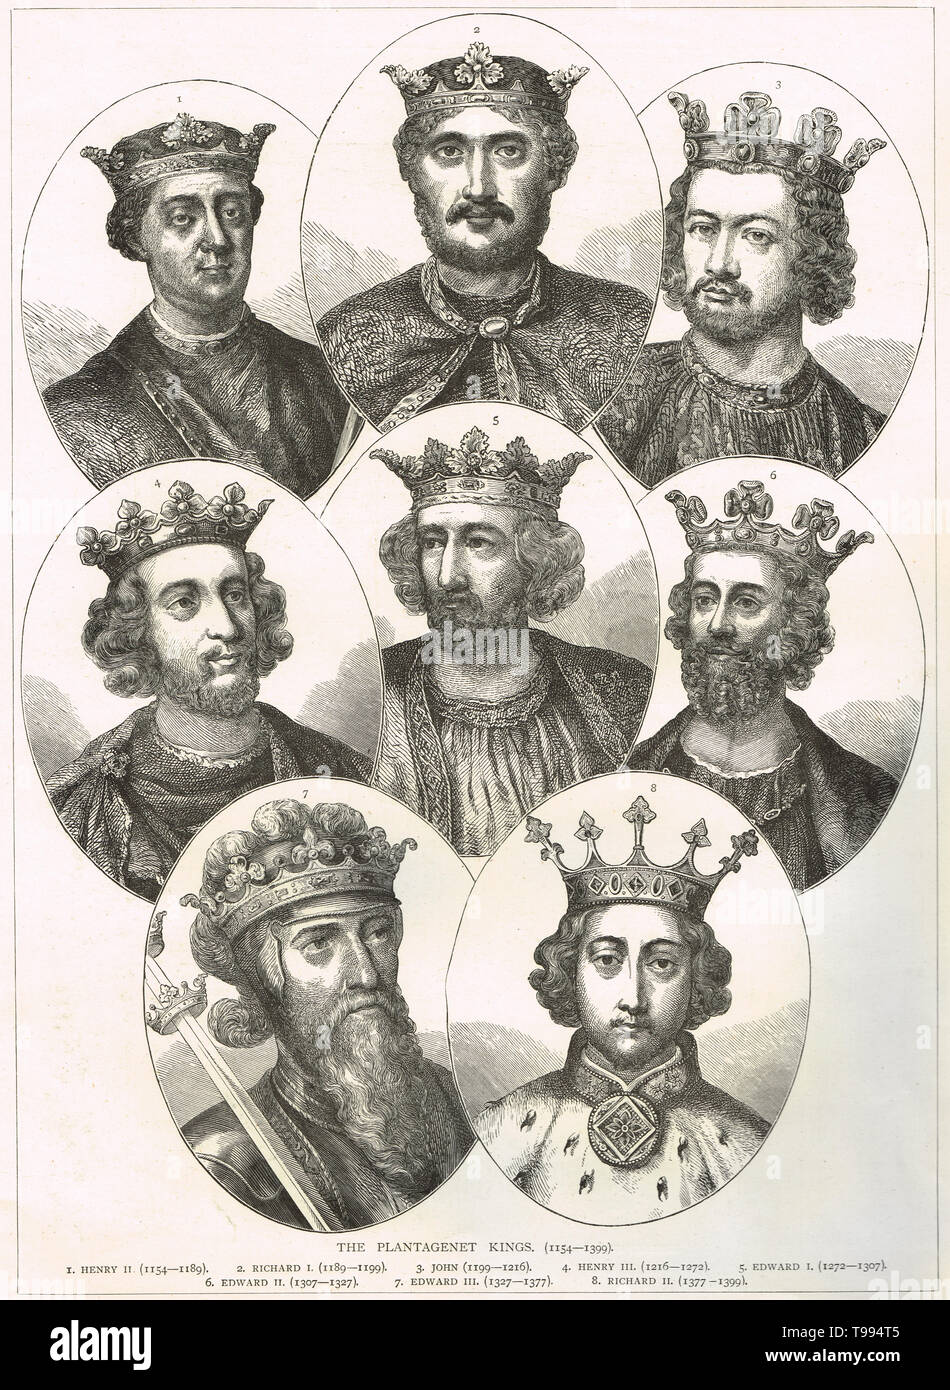 Los reyes Plantagenet de Inglaterra,1154-1399 Foto de stock